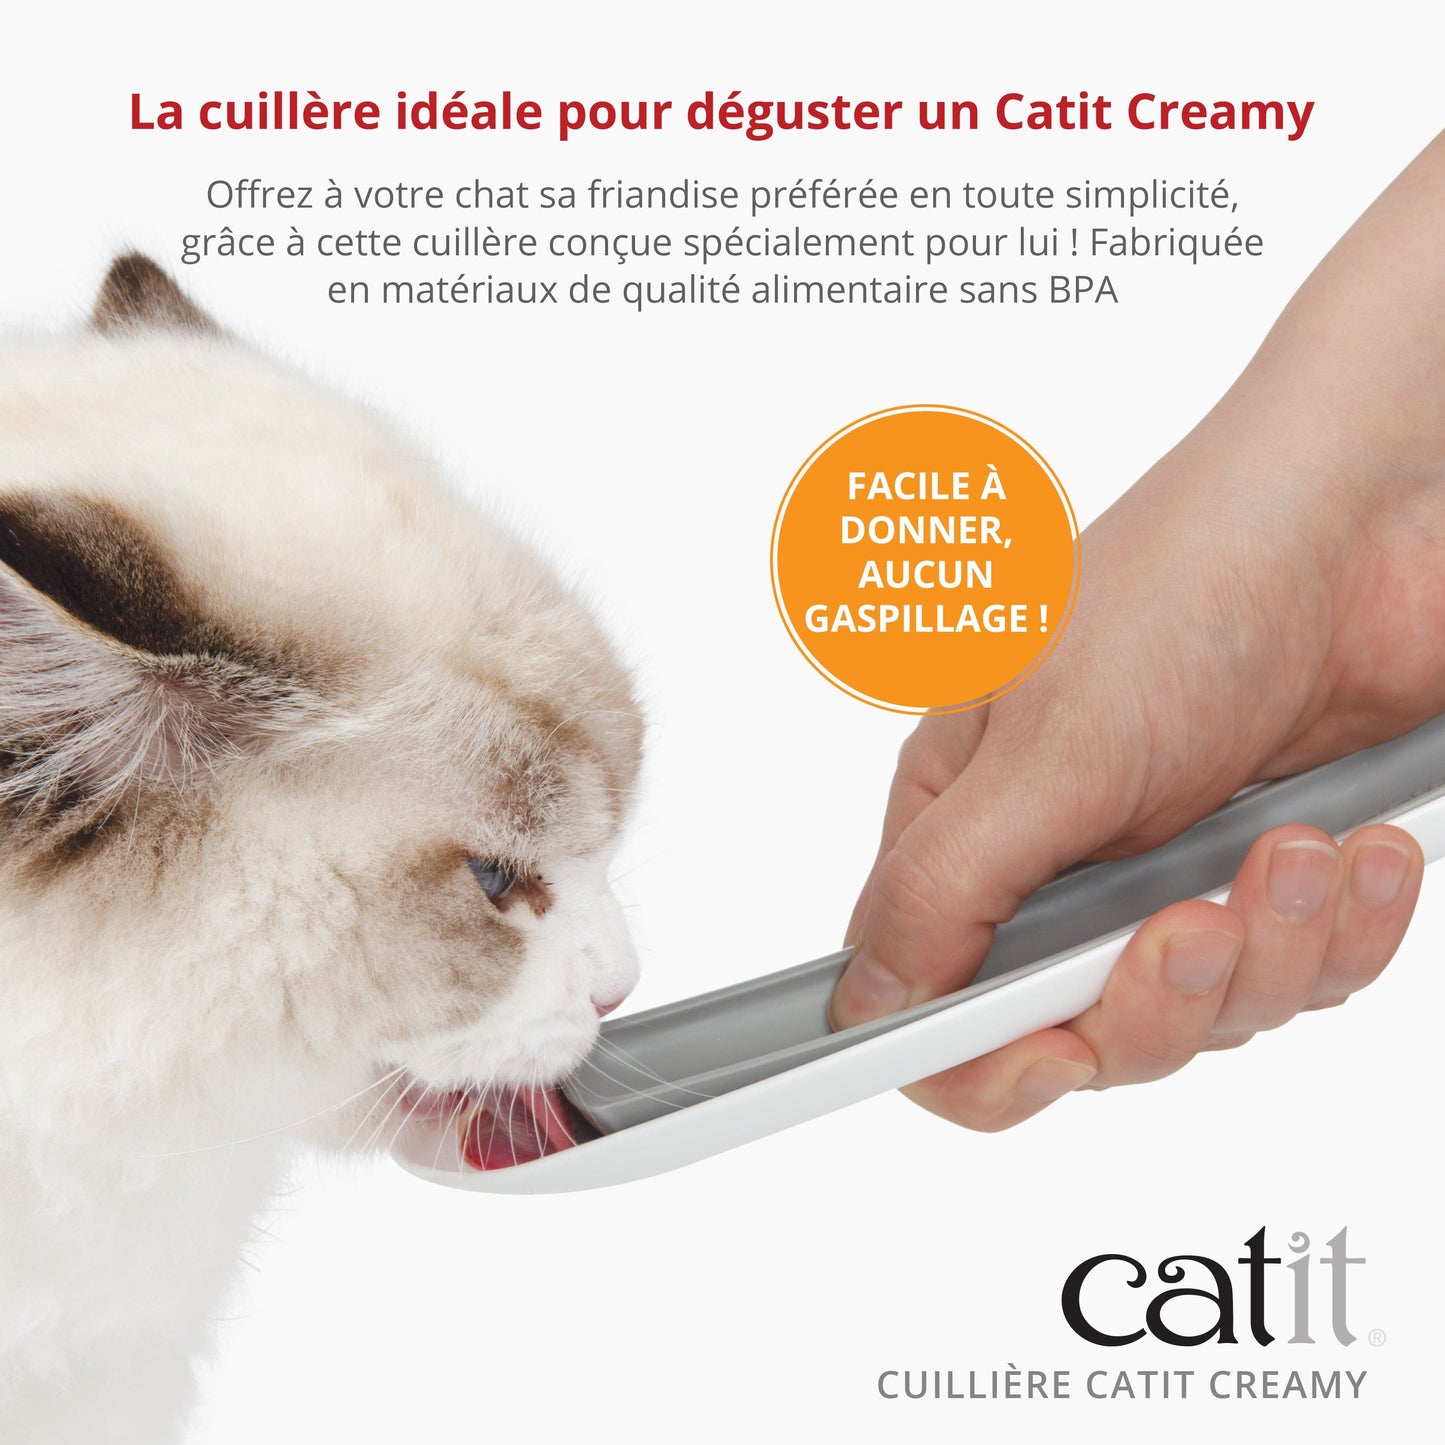 Cuillière Catit Creamy, paquet de 3